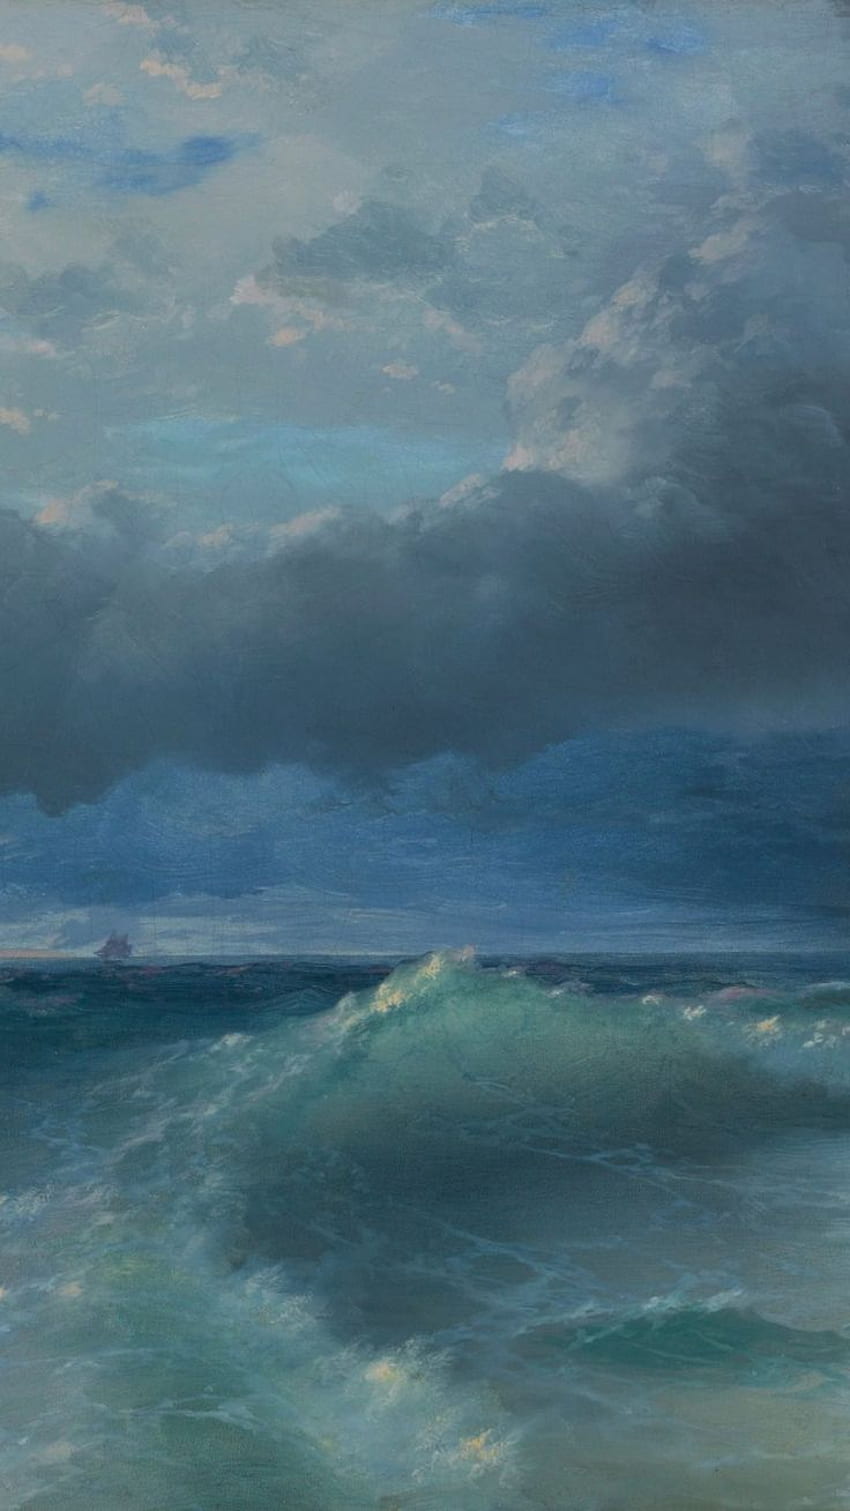 海のキャンバスの絵画、海の波の抽象画、空の抽象画、海の風景の油絵、青い絵の装飾芸術。 美的絵画、芸術、風景画、海の絵 HD電話の壁紙